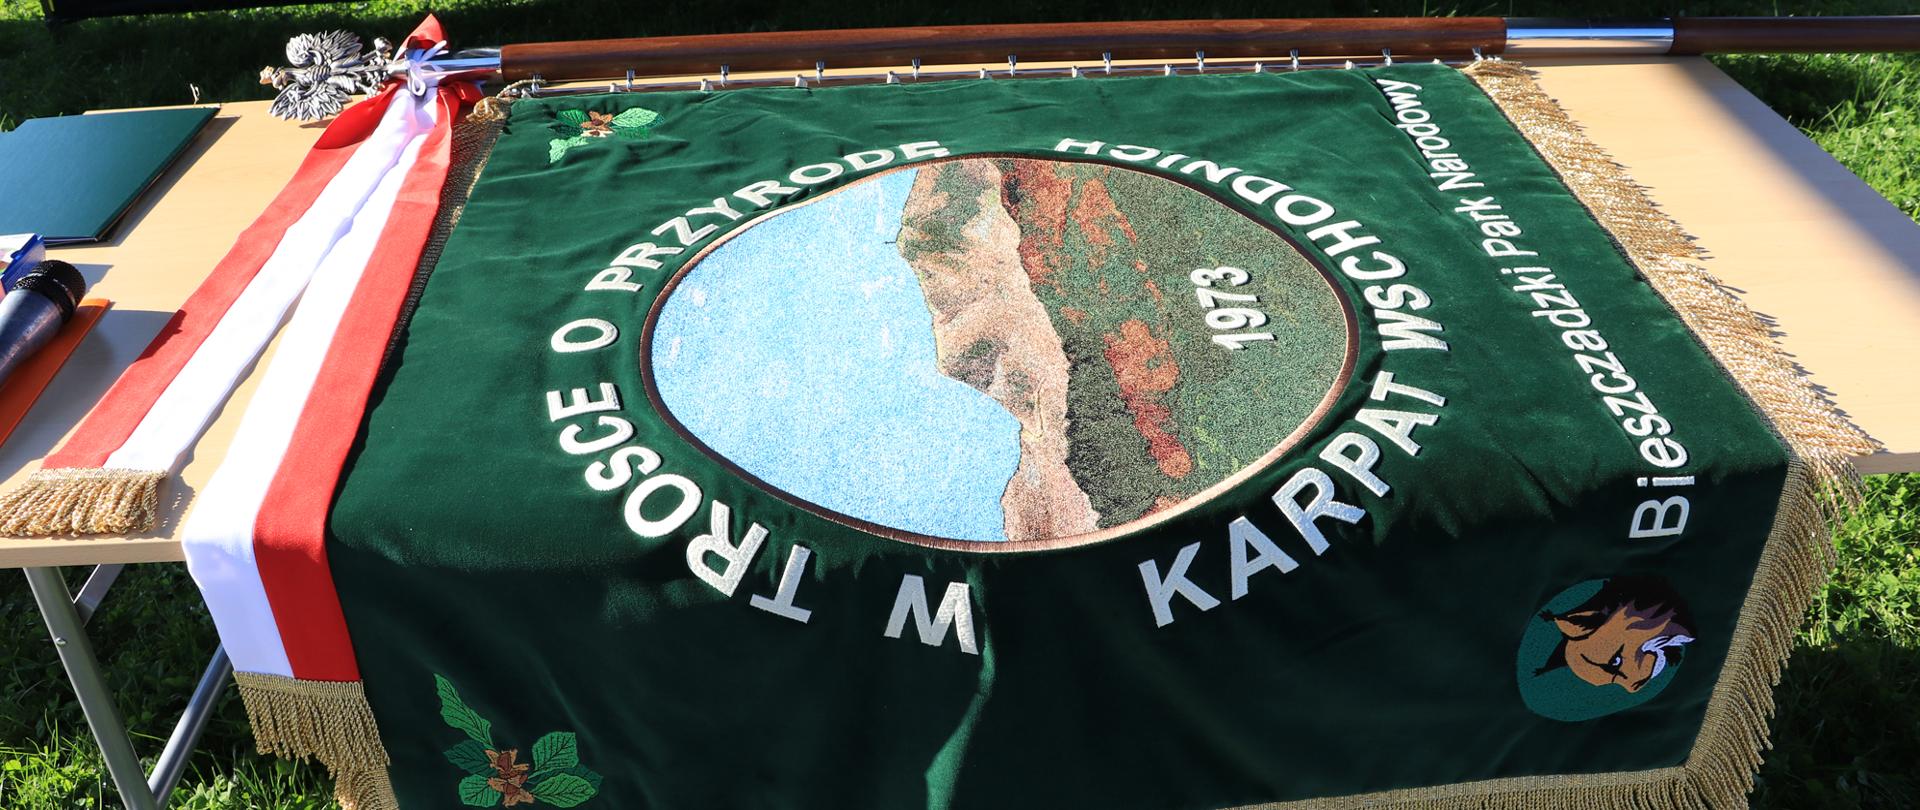 Na zdjęciu widać sztandar Bieszczadzkiego Parku Narodowego ułożony na stole. Jest On koloru zielonego z napisem w około panoramy gór bieszczadzkich "w trosce o przyrodę Karpat Wschodnich"